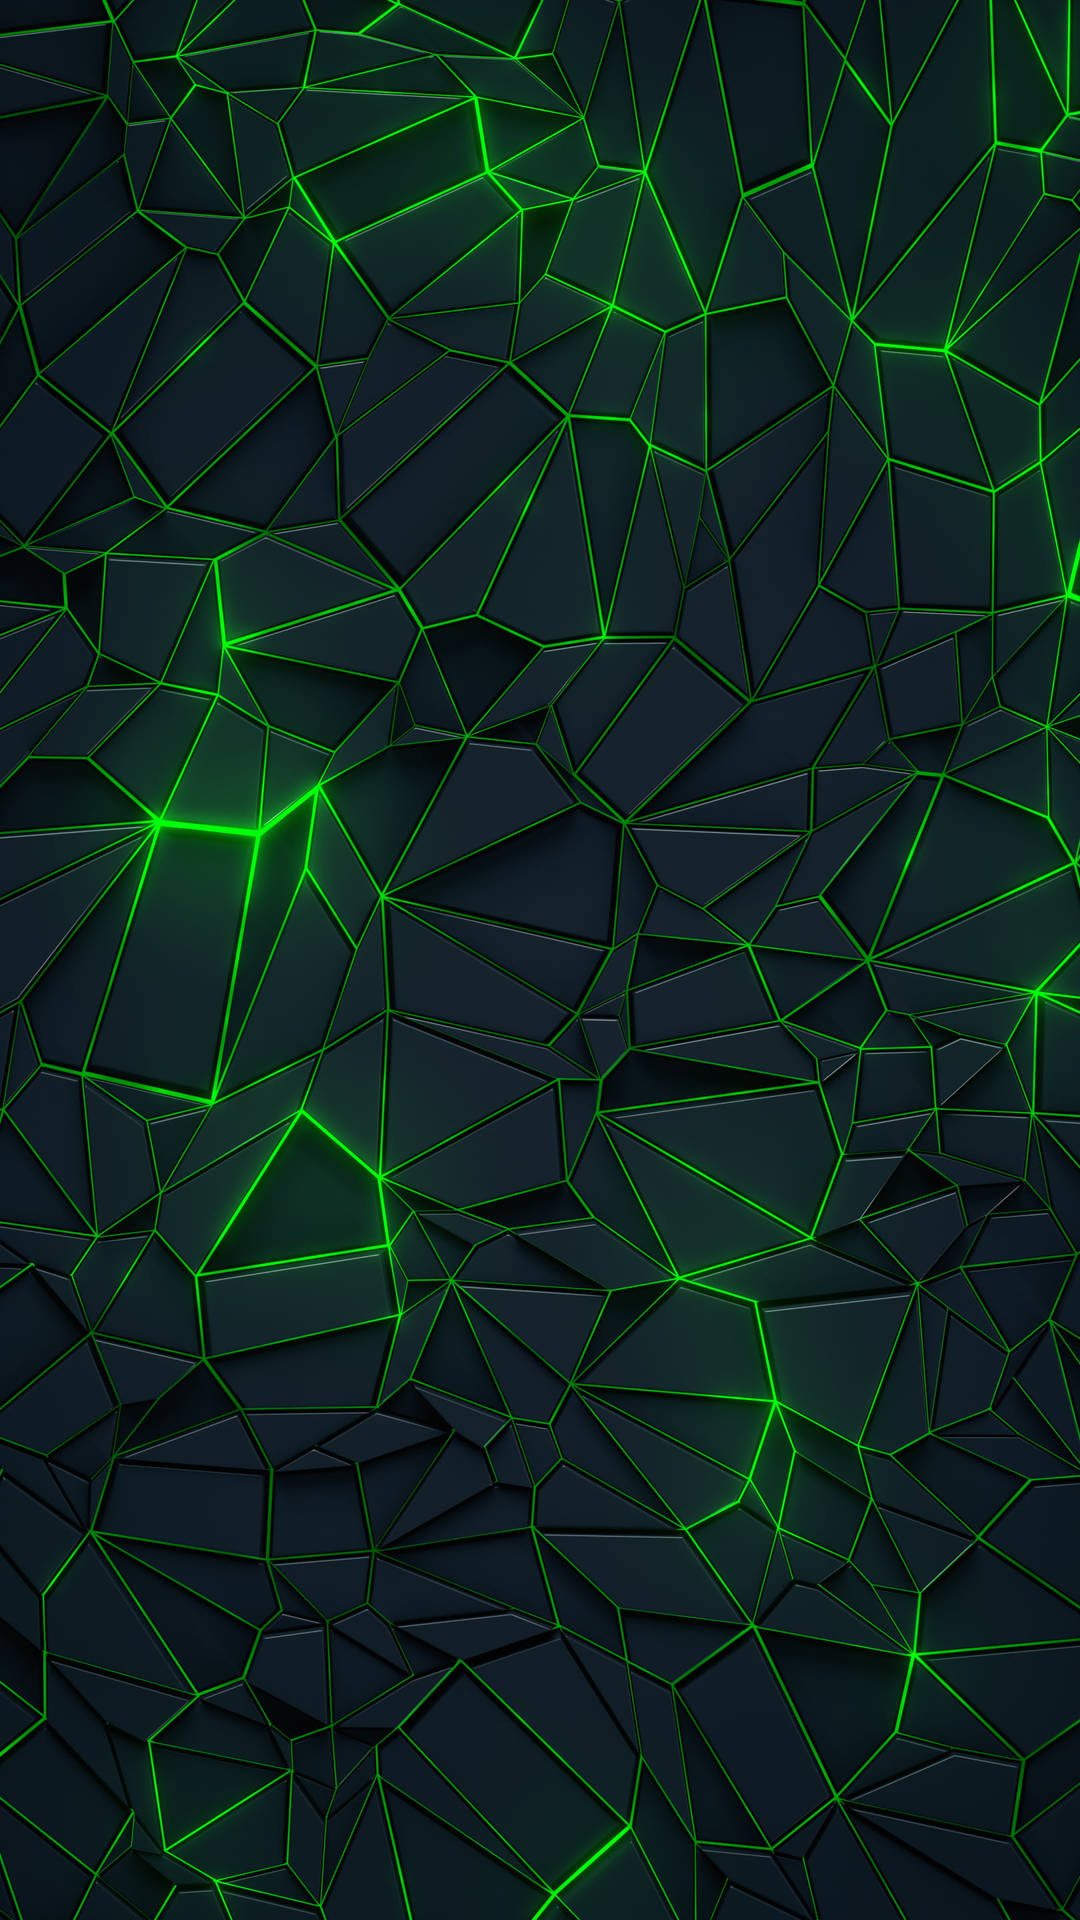 Geometrischesgrünes Neon-ästhetik Iphone Wallpaper